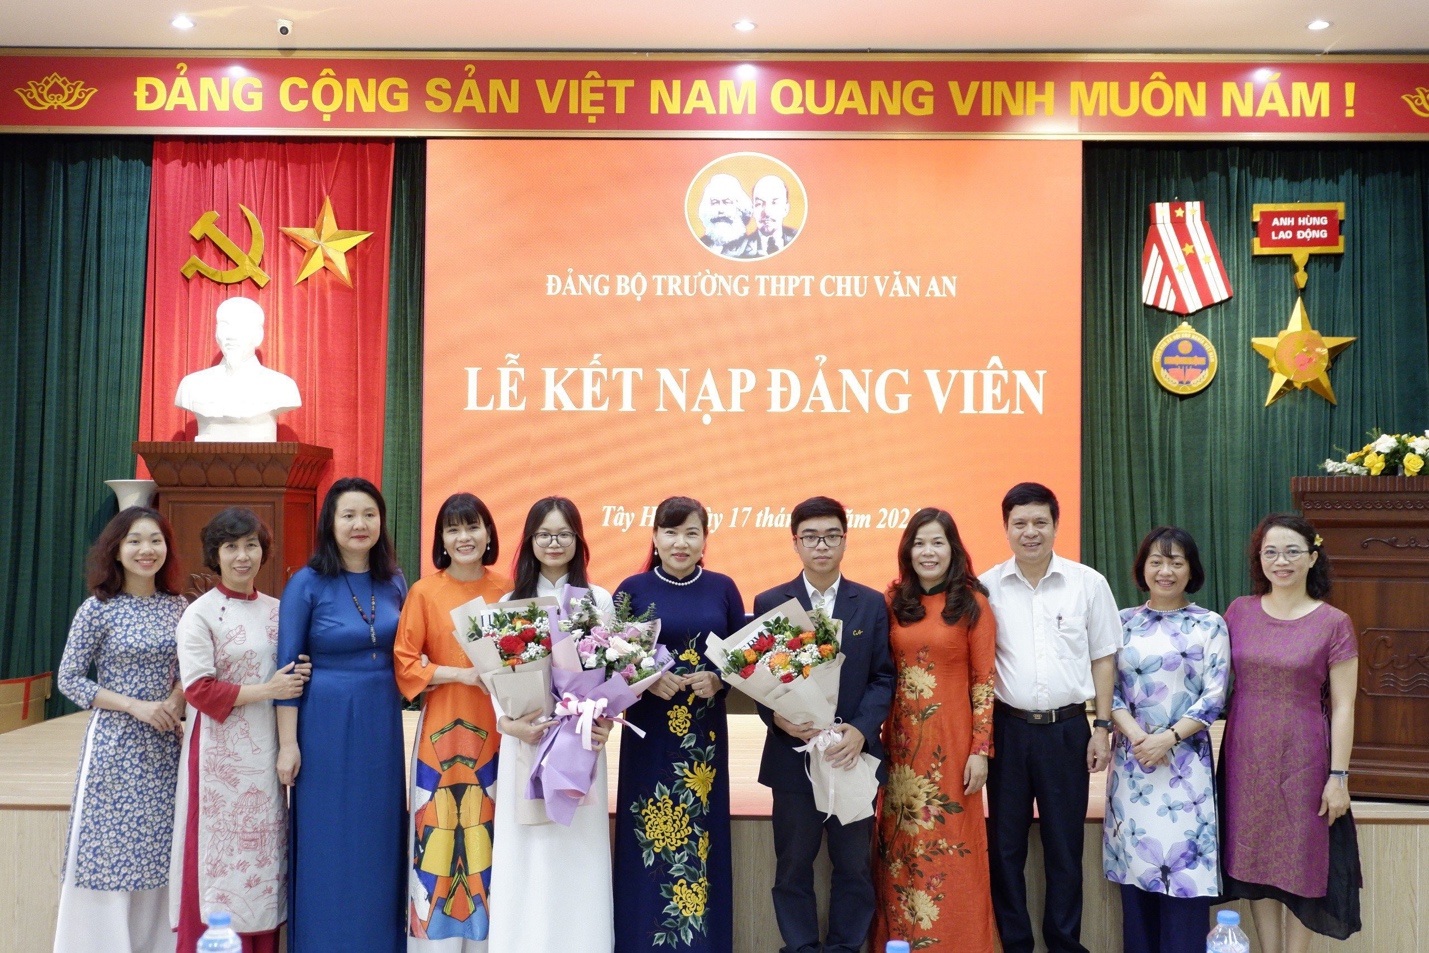 Đến nay đã có 12 học sinh THPT Chu Văn An được kết nạp vào Đảng.